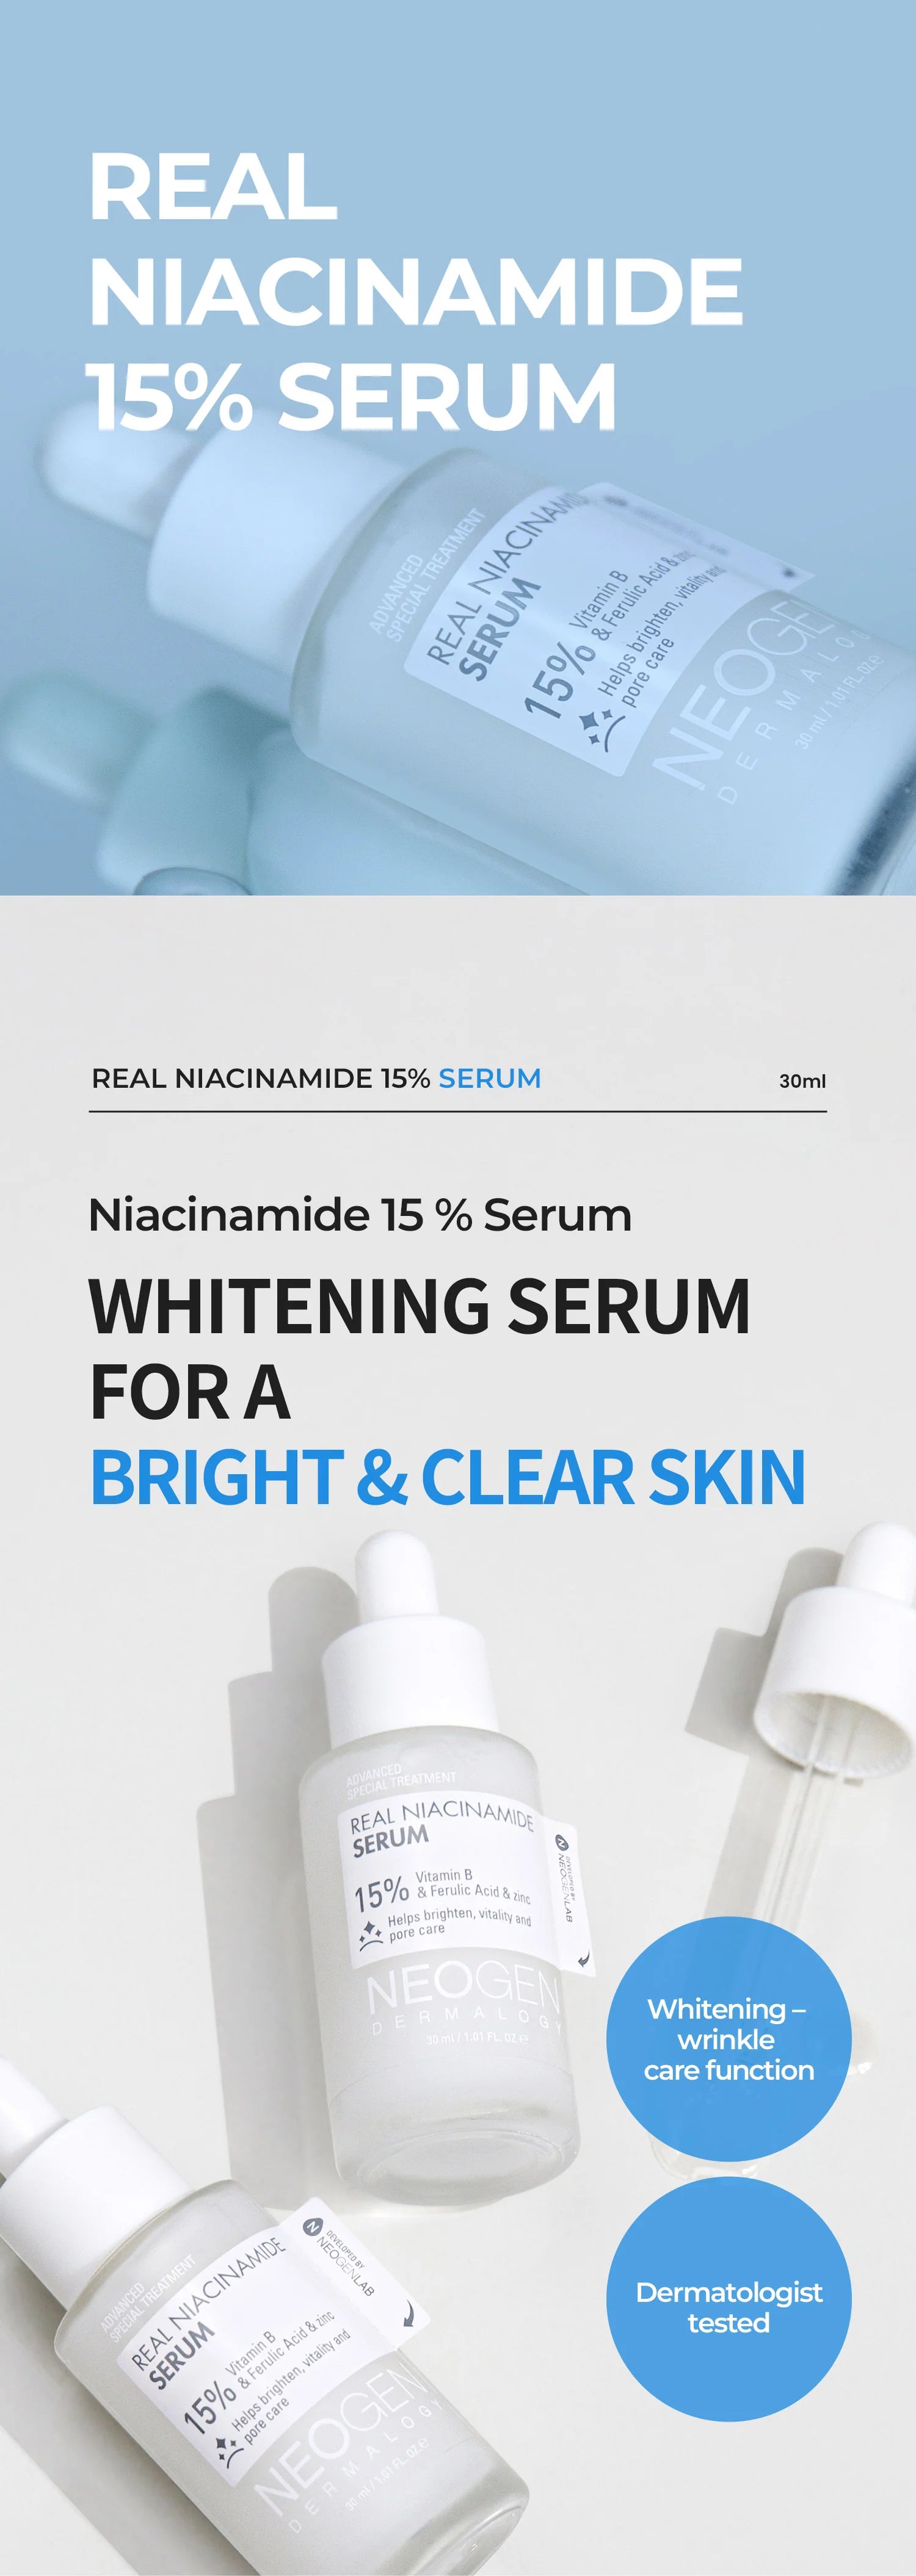 NEOGEN_Real Niacinamide 15% Serum 30ml_1